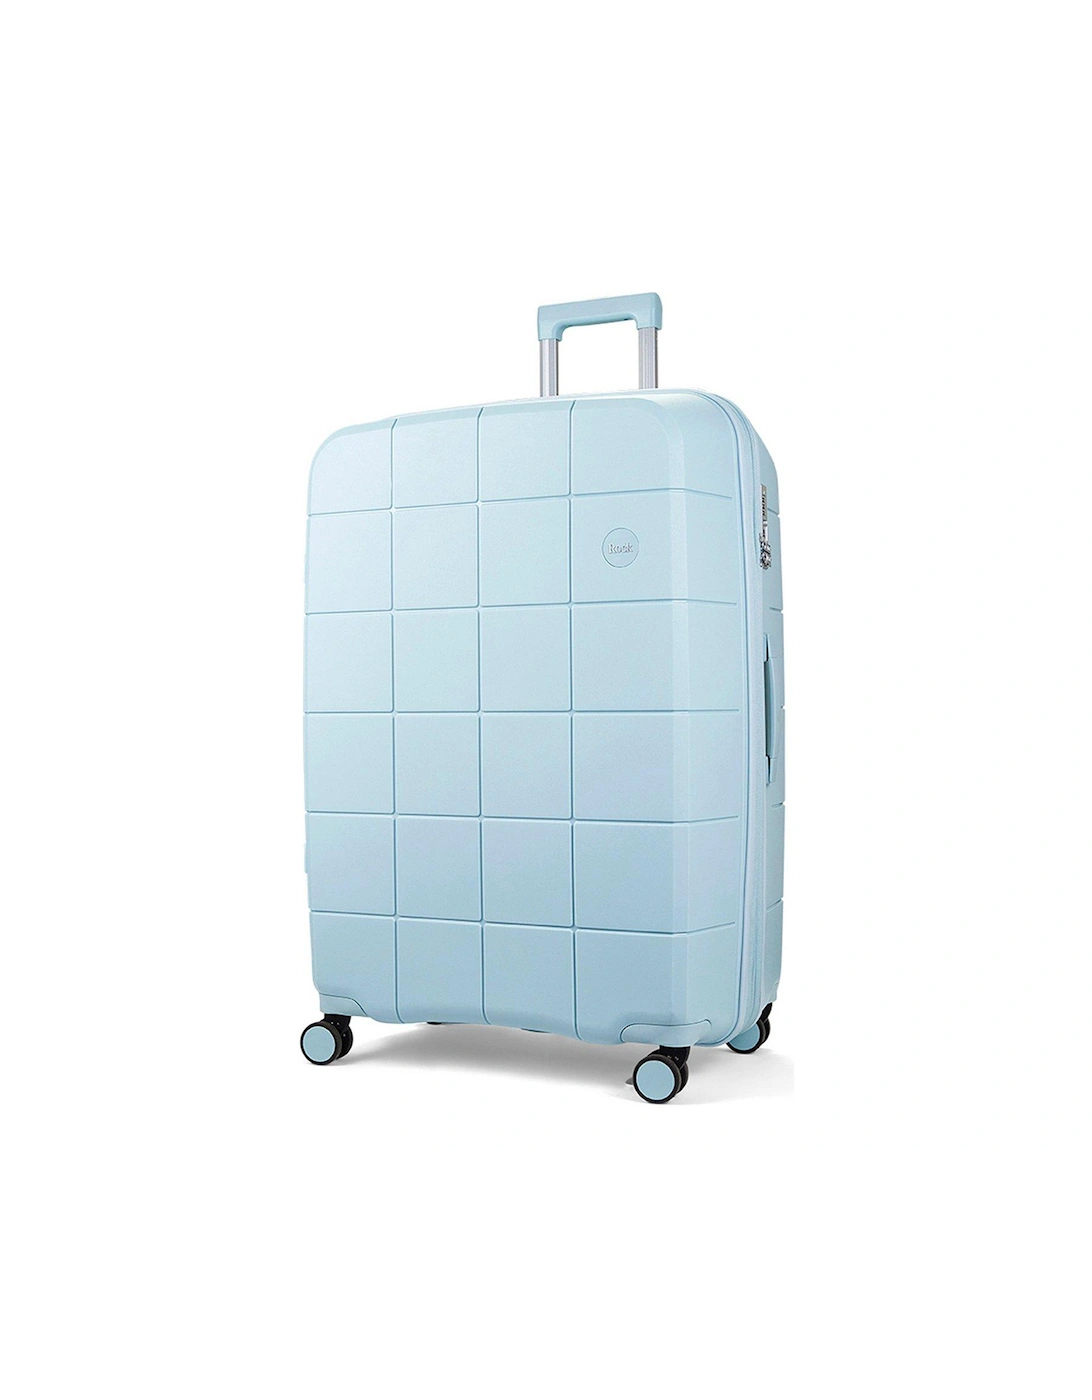 Pixel 8-Wheel Hardshell Large Suitcase with TSA Lock - Pastel Blue, 3 of 2